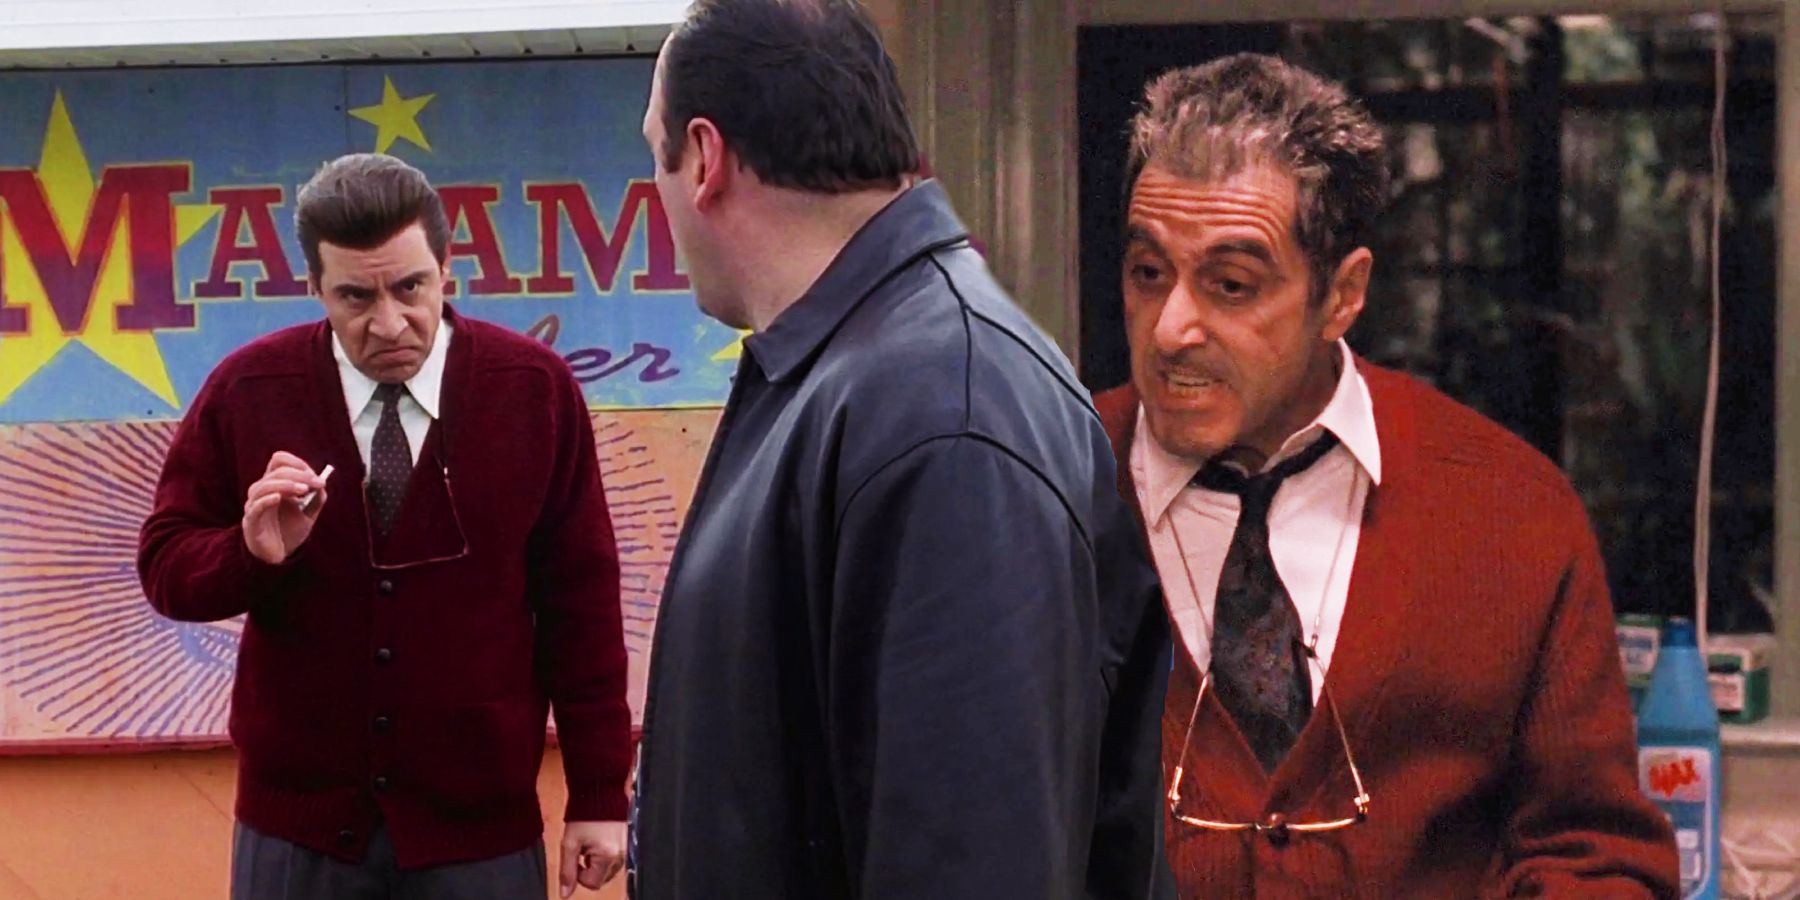 Silvio in Michael Corleone's cardigan